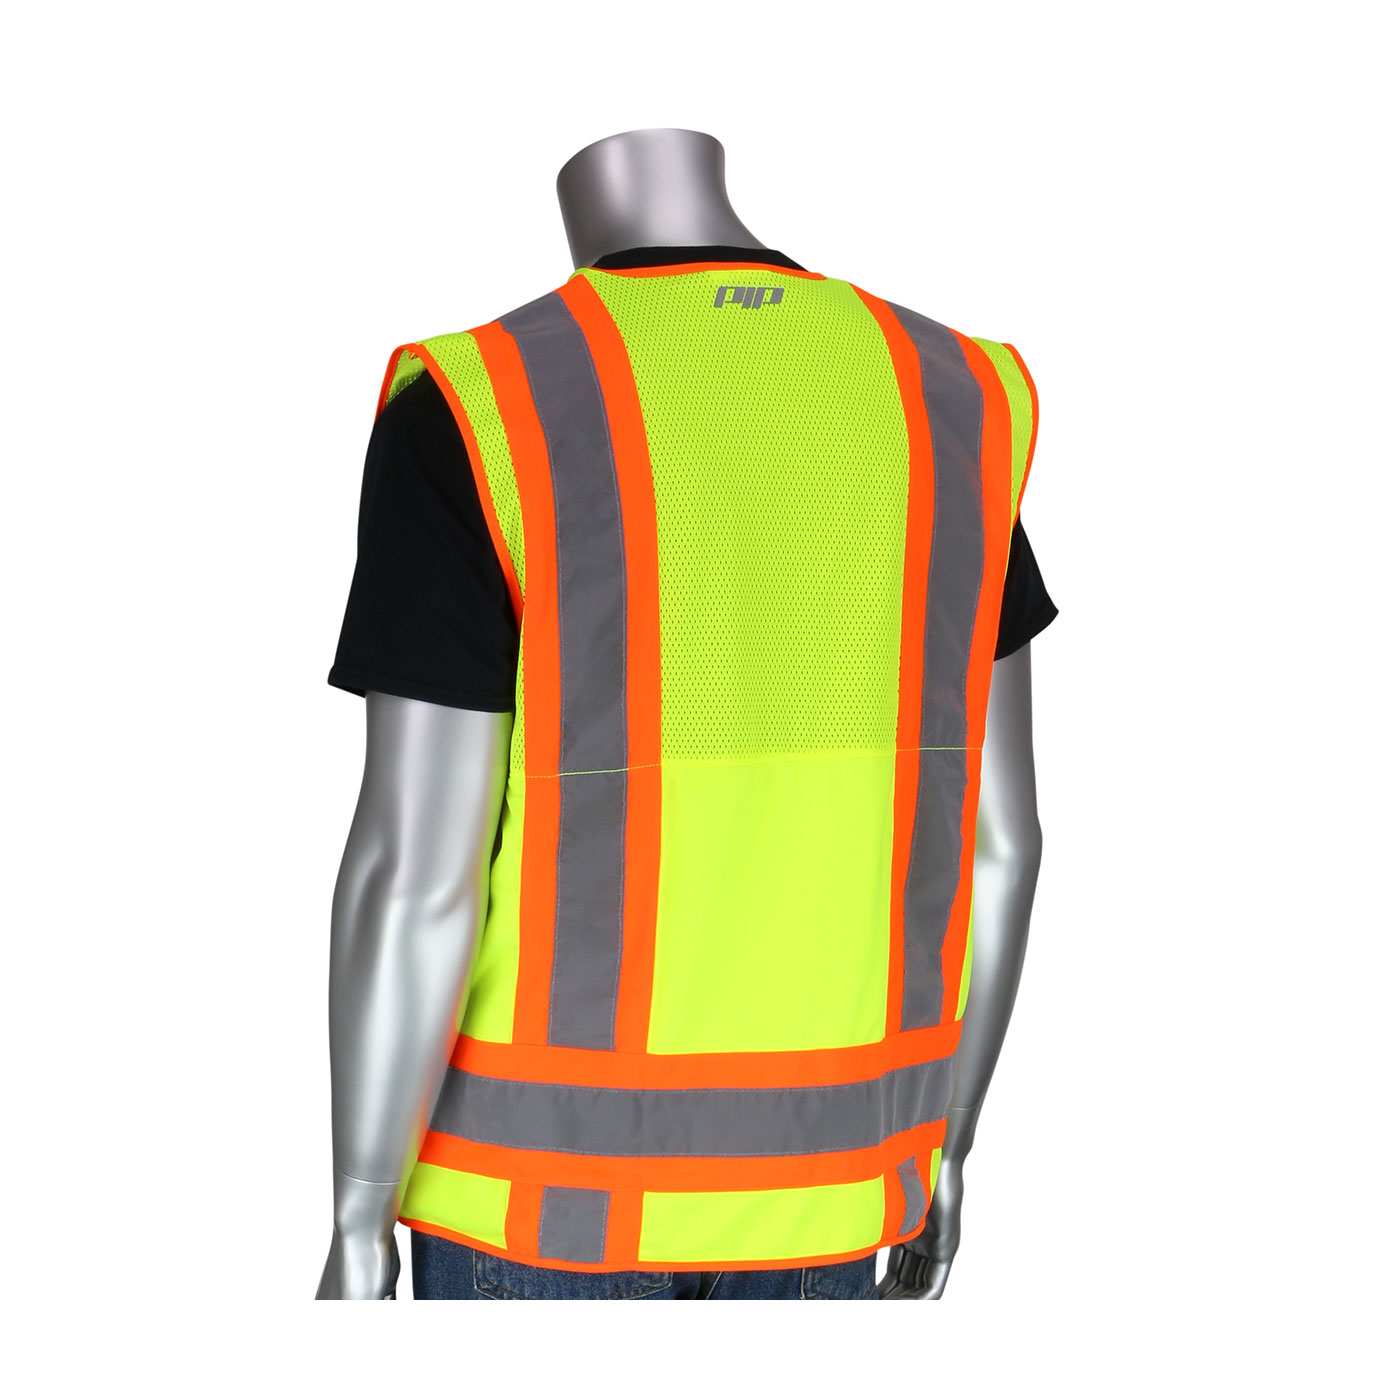 PIP® Hi Viz Yellow ANSI Type R Class 2 Two-Tone Ten Pocket Surveyors Tech Vest #302-0700